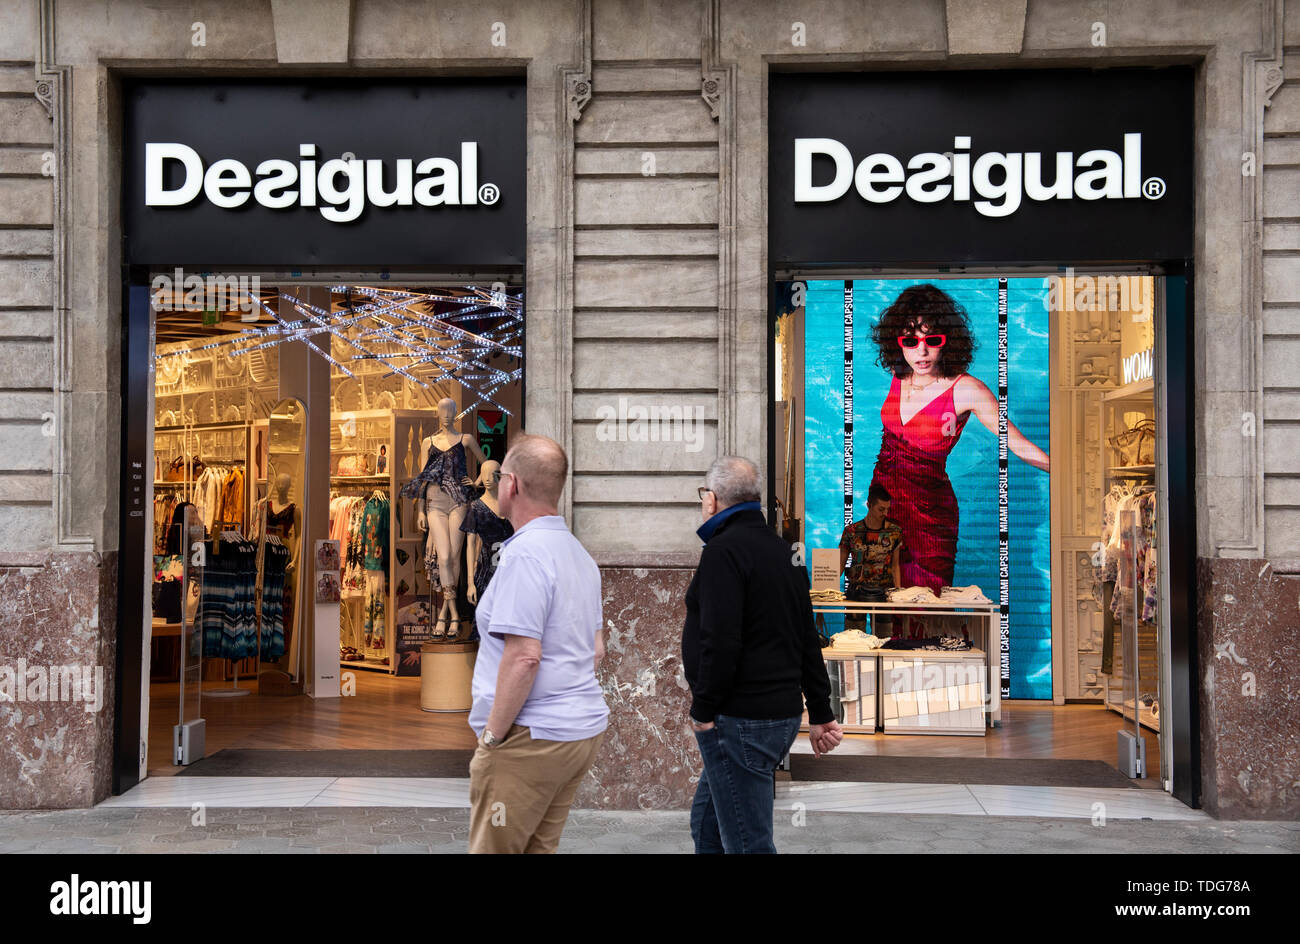 Fußgänger Pass durch die spanischen Kleidung Marke Desigual Store in Spanien  Stockfotografie - Alamy